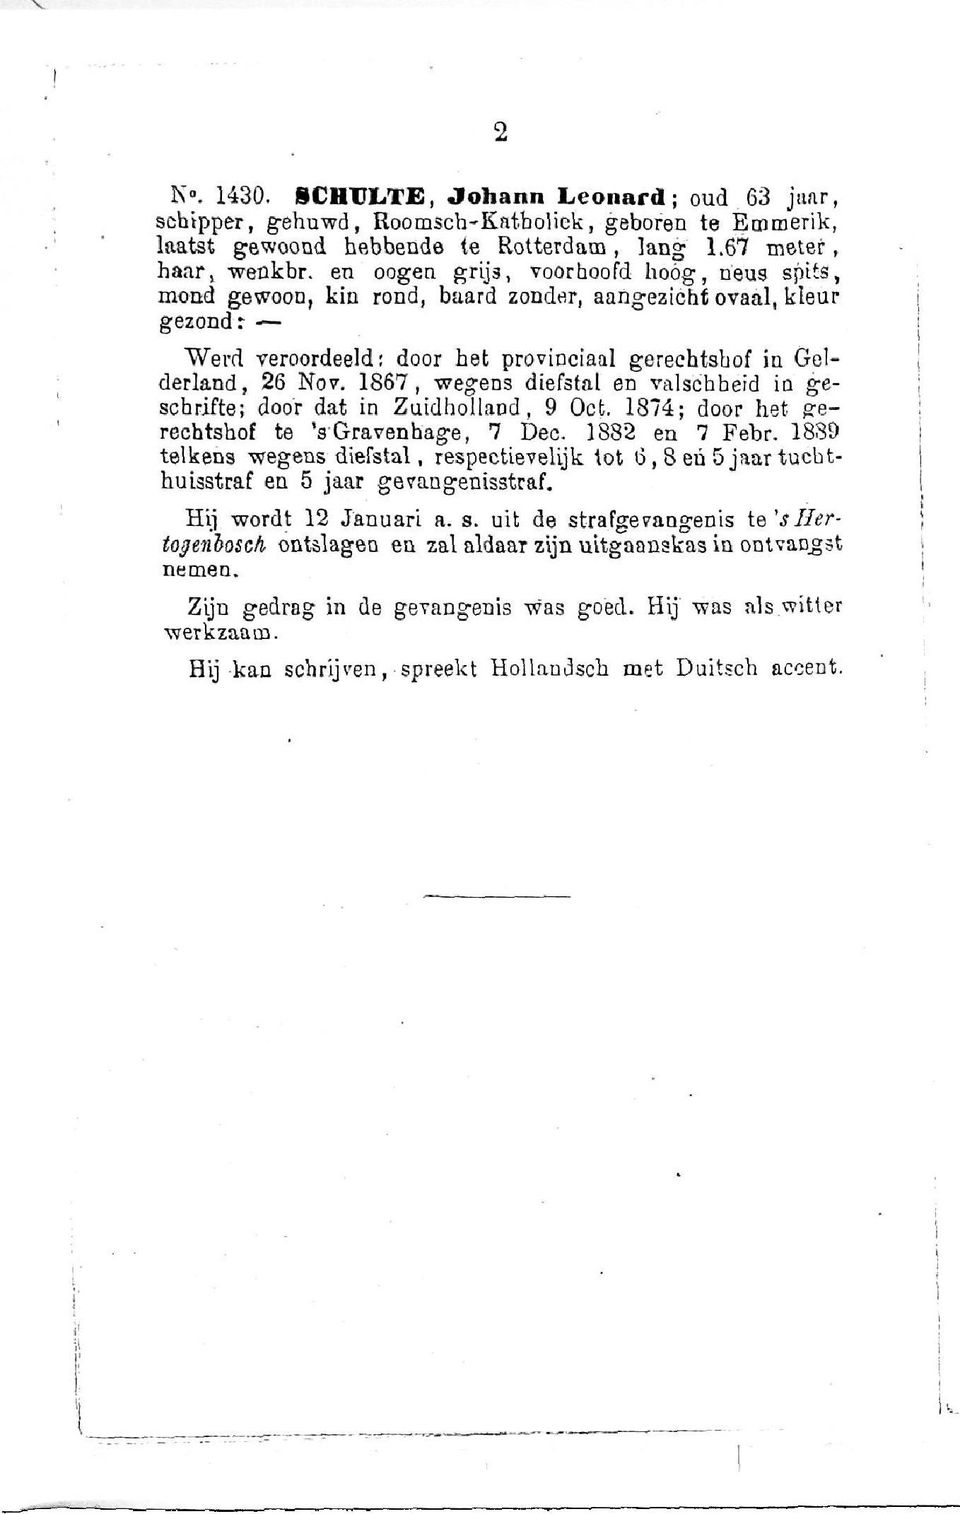 1867, wegens diefstal en valschbeid in geschrifte; door dat in Zuidholland, 9 Ocfc. 1874; door het gerechtshof te 's Gravenhage, 7 Dec. 1882 en 7 Febr.